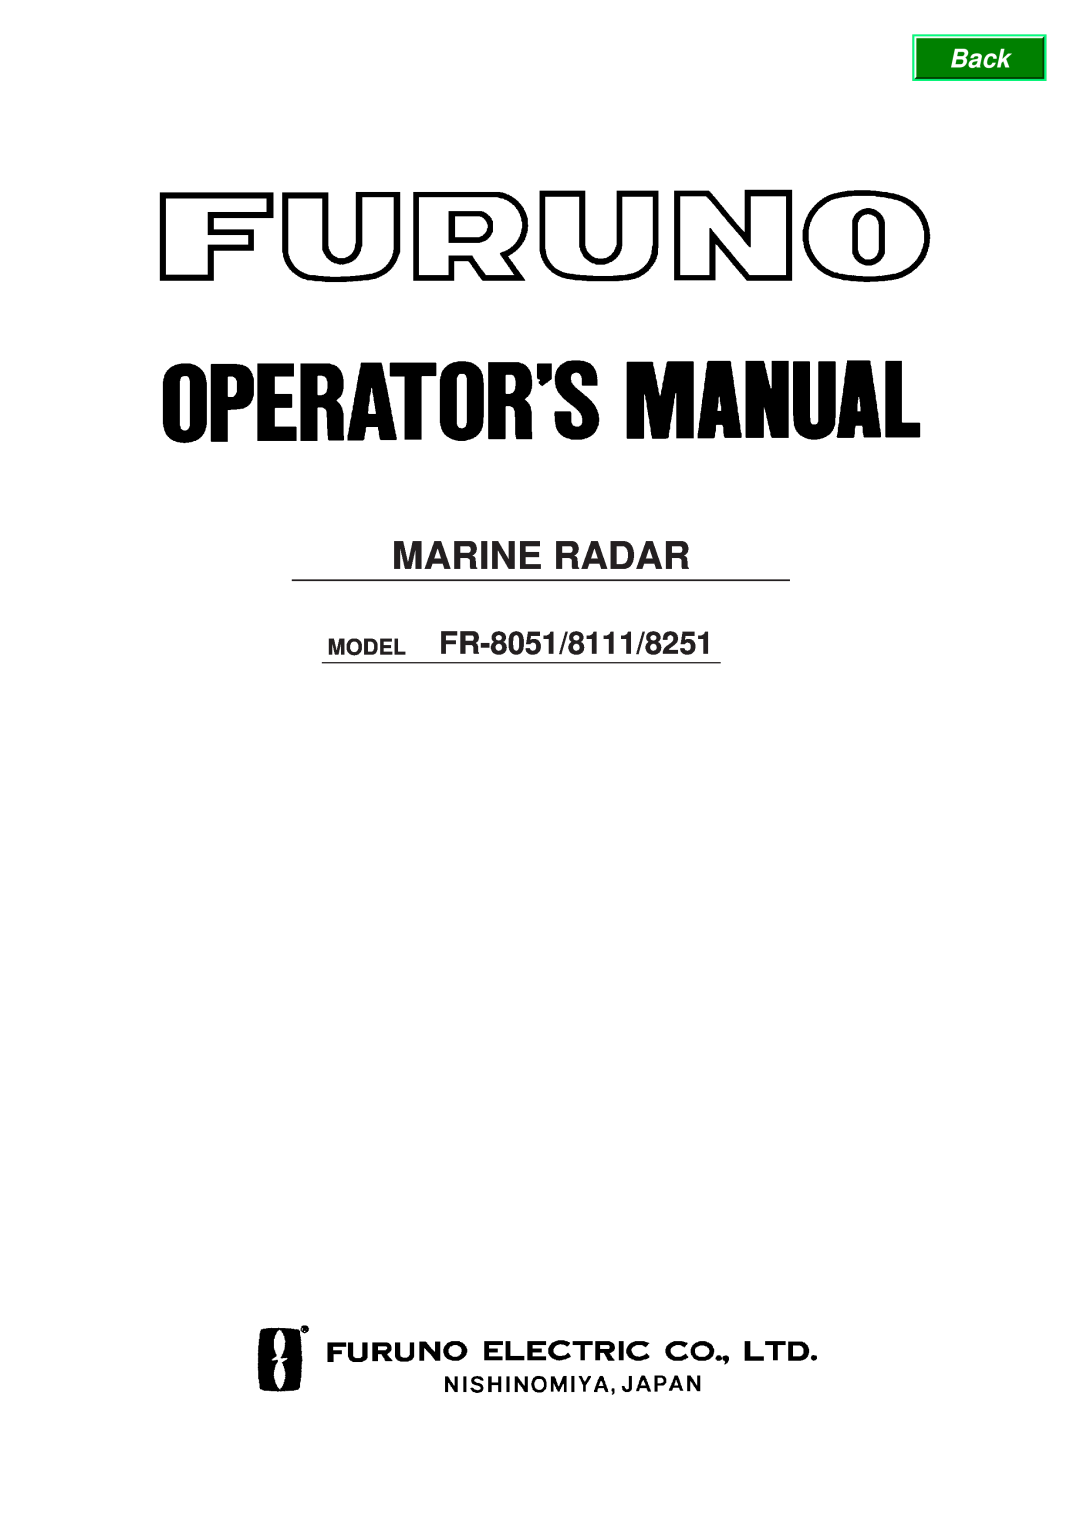 Furuno FR-8111, FR-8251 manual Marine Radar, MODEL FR-8051/8111/8251 